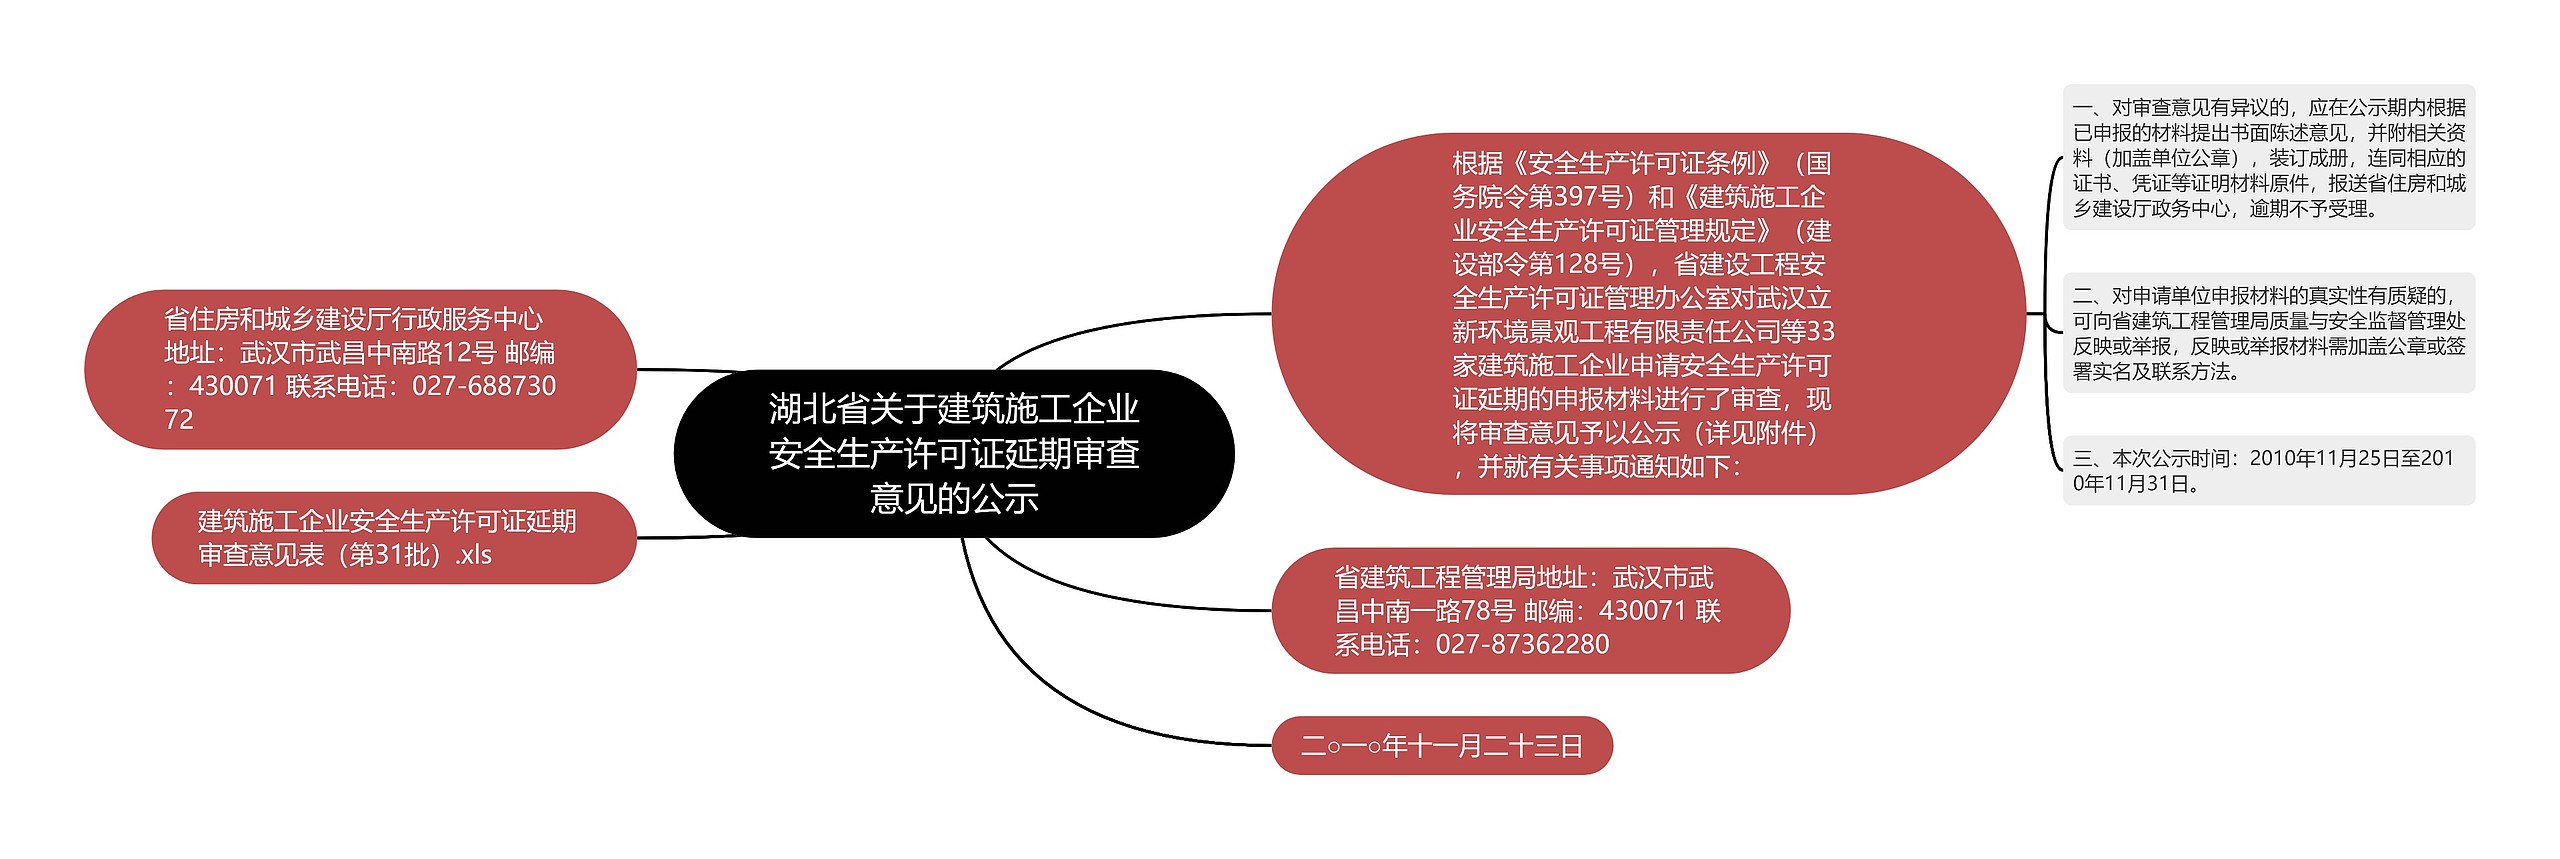 湖北省关于建筑施工企业安全生产许可证延期审查意见的公示思维导图